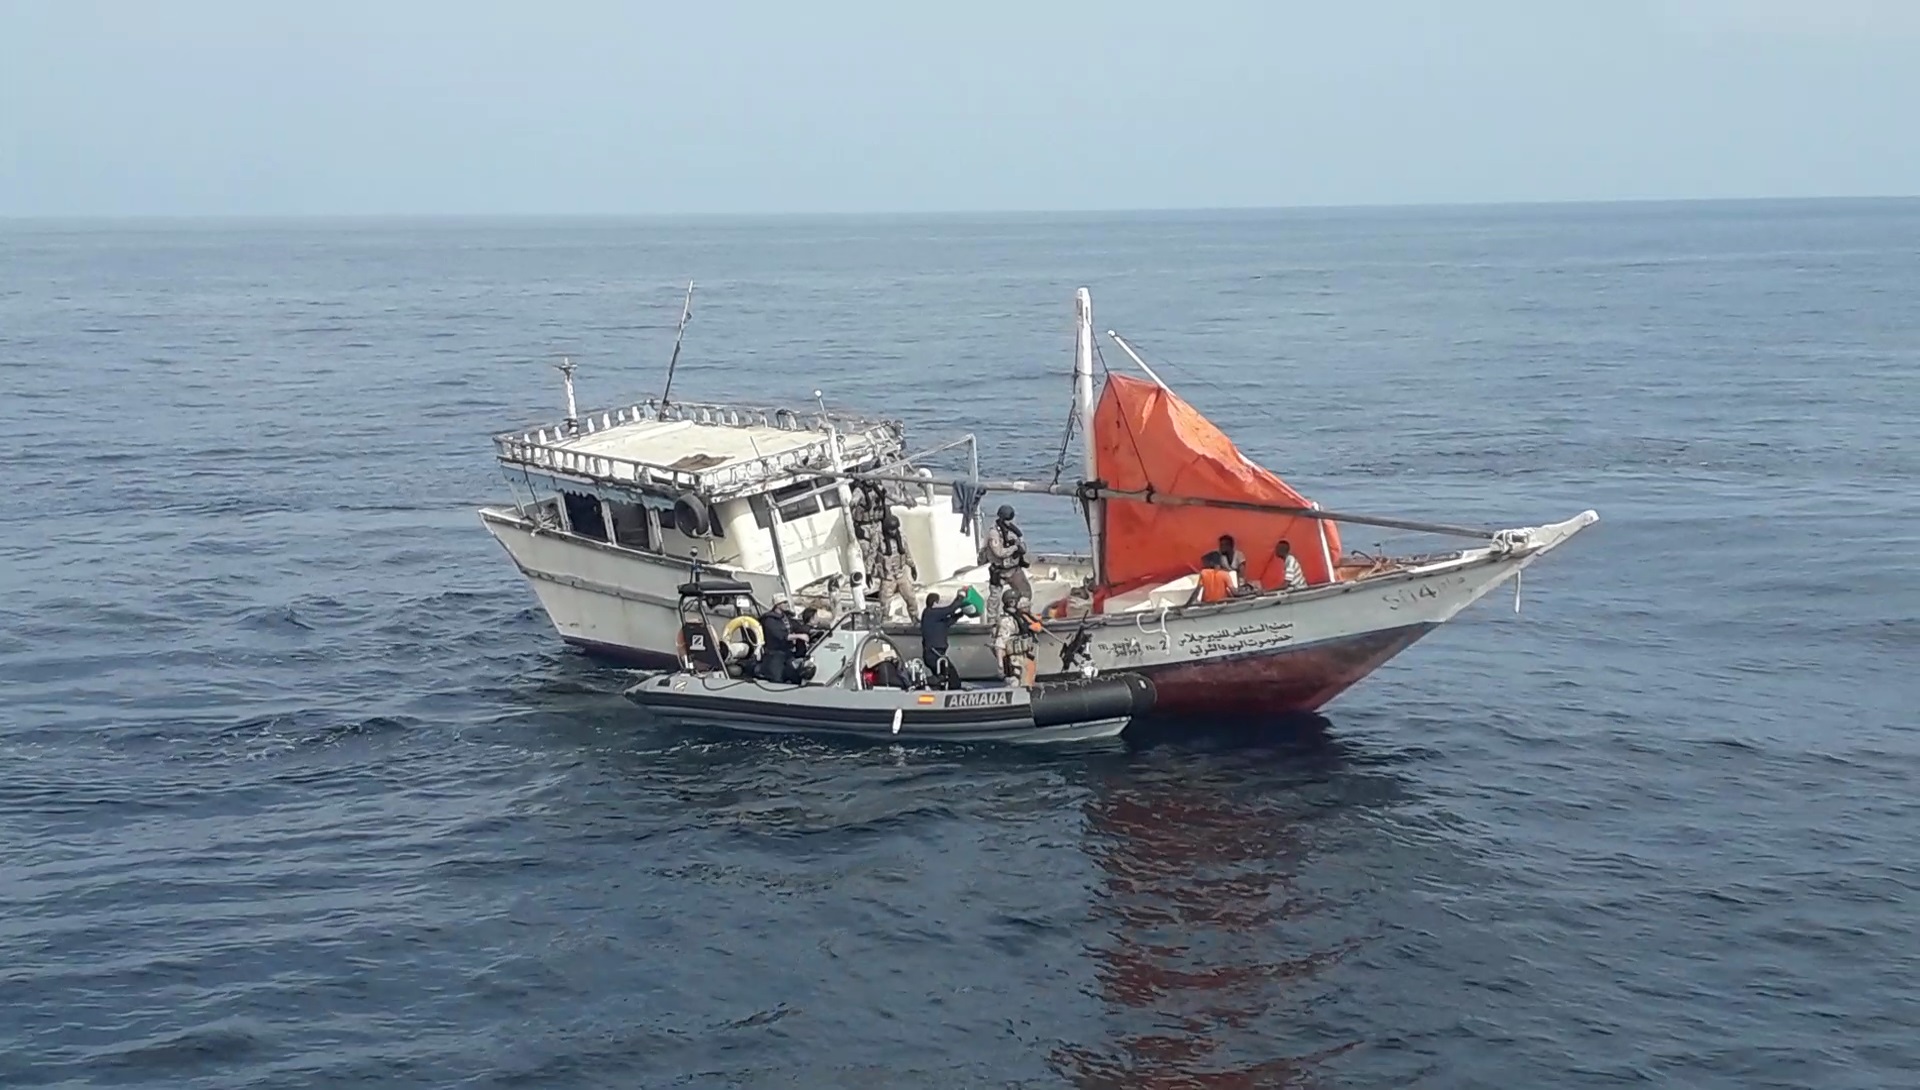 El buque “Relámpago” auxilia a embarcaciones a la deriva frente a la costa de Somalia y colabora con fuerzas de seguridad de la región.